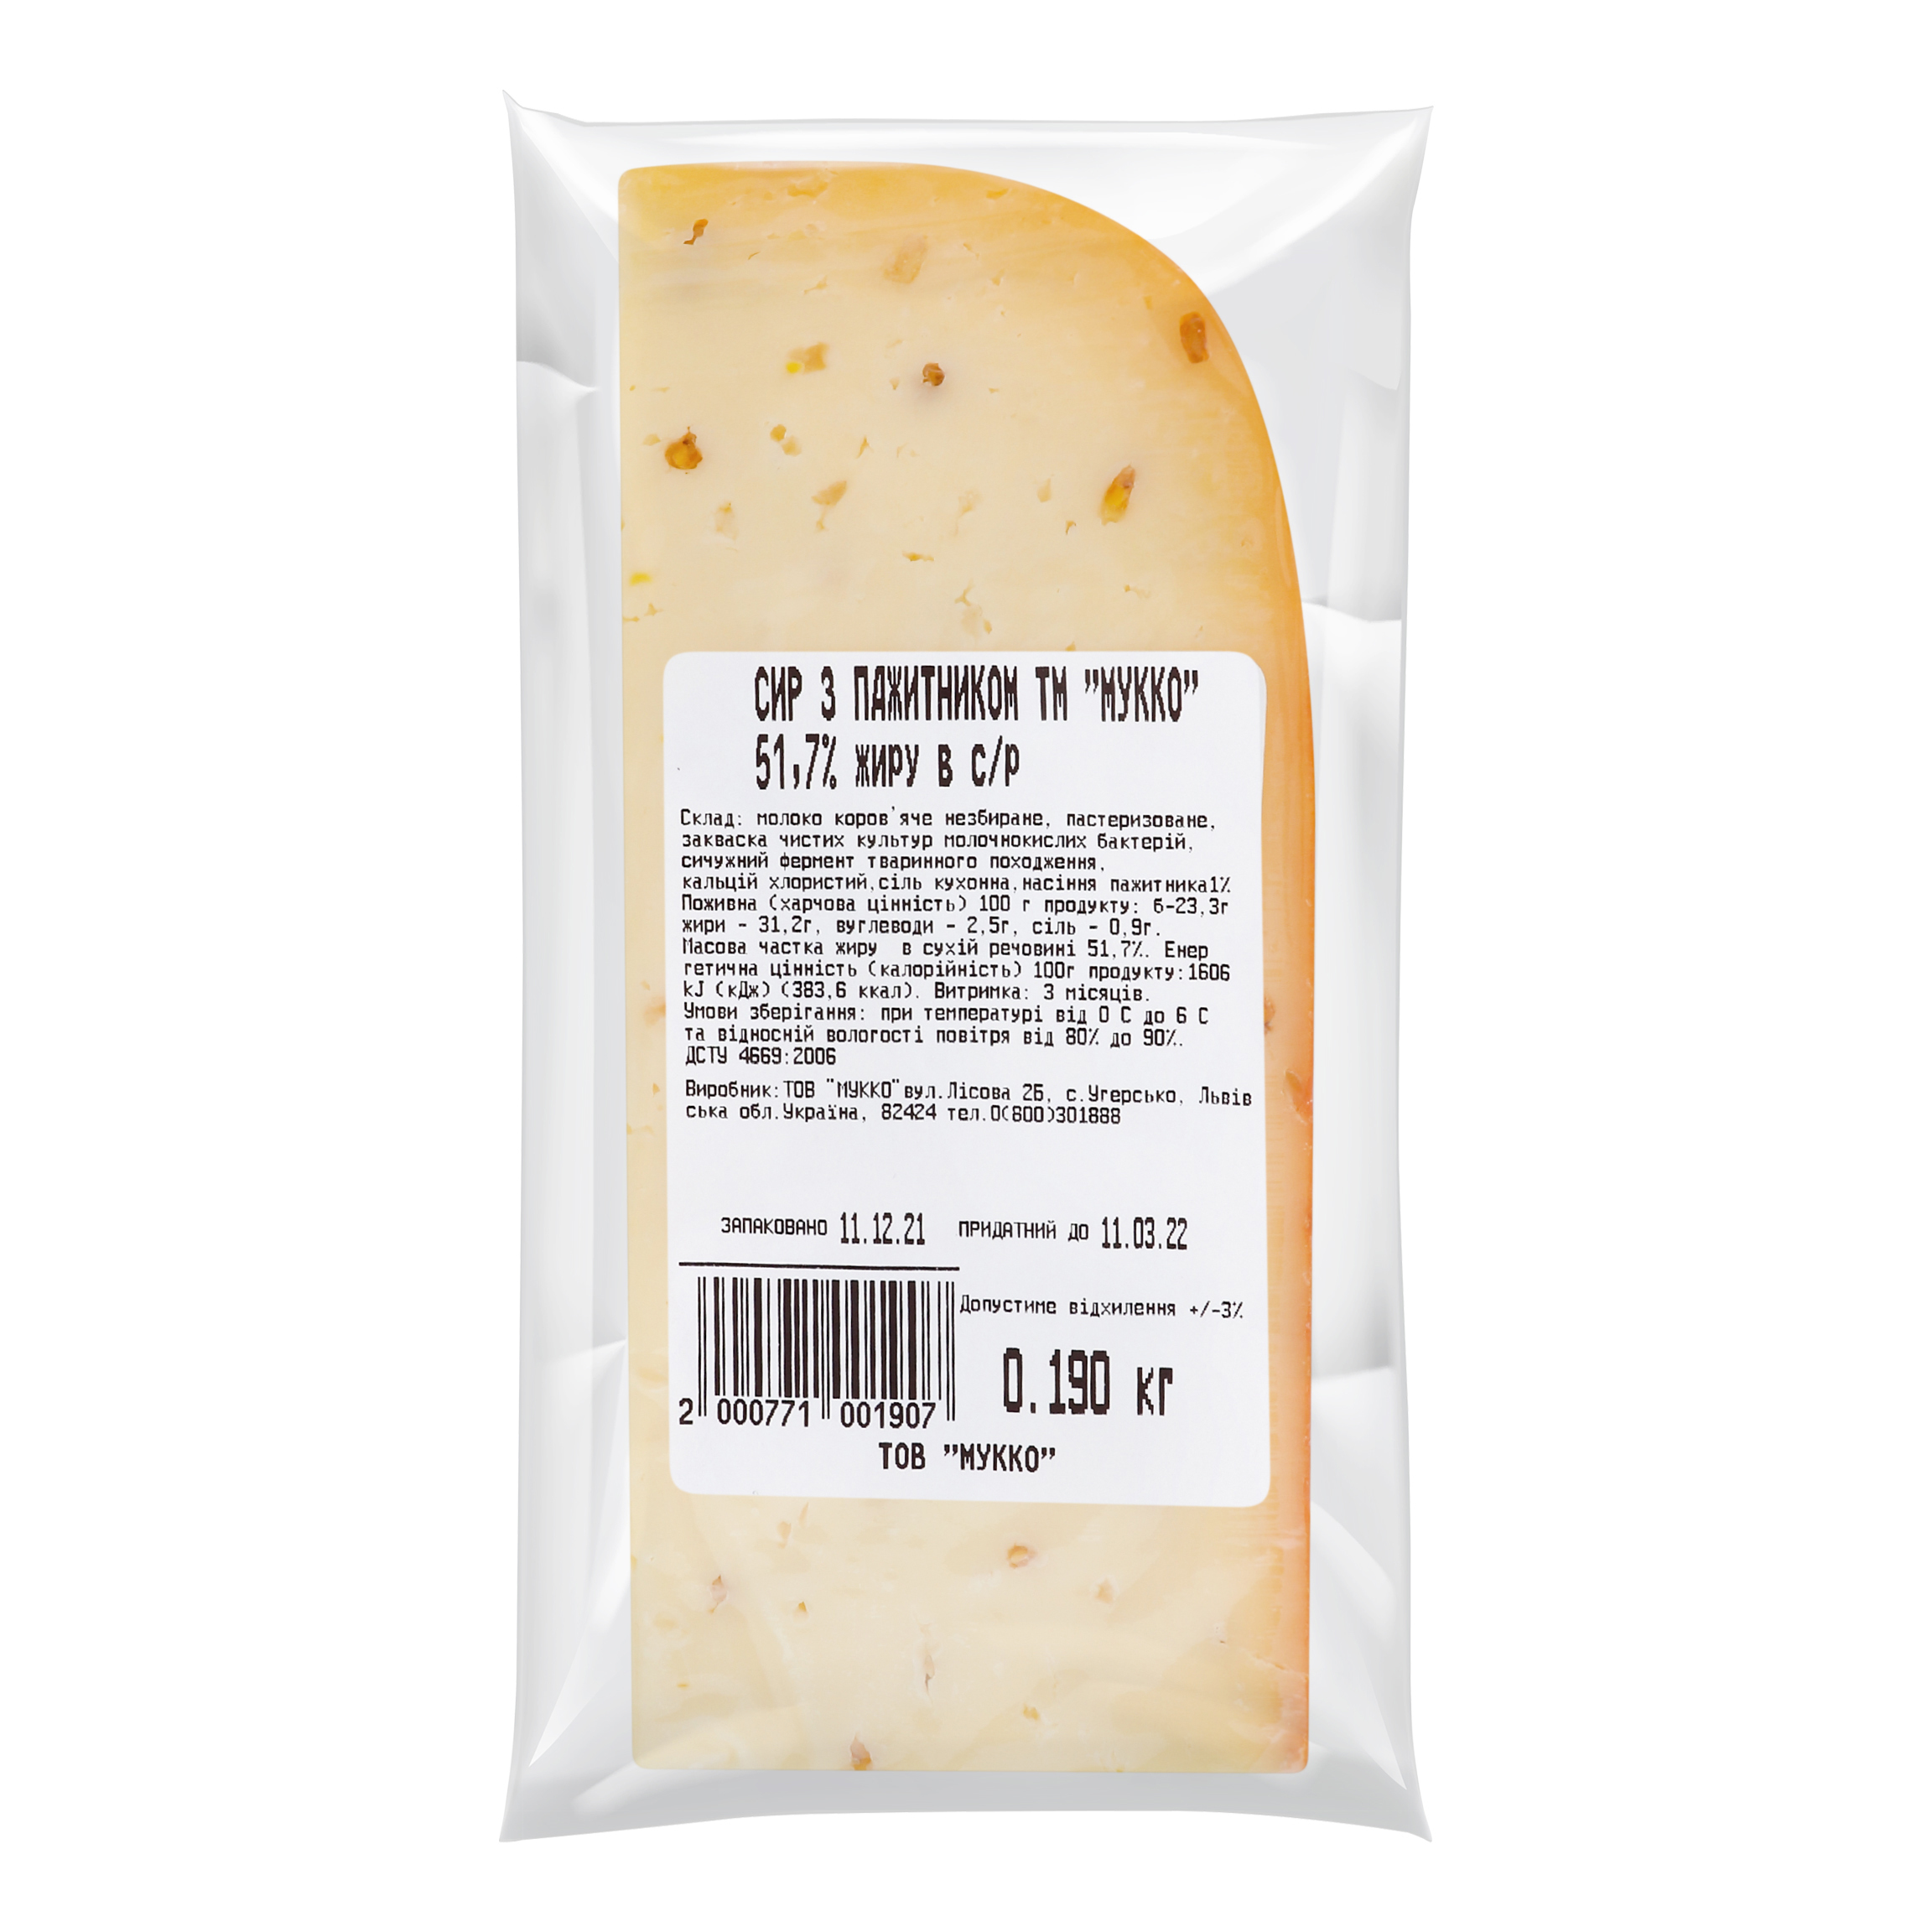 Mukko cheese with fenugreek 51.7% 2